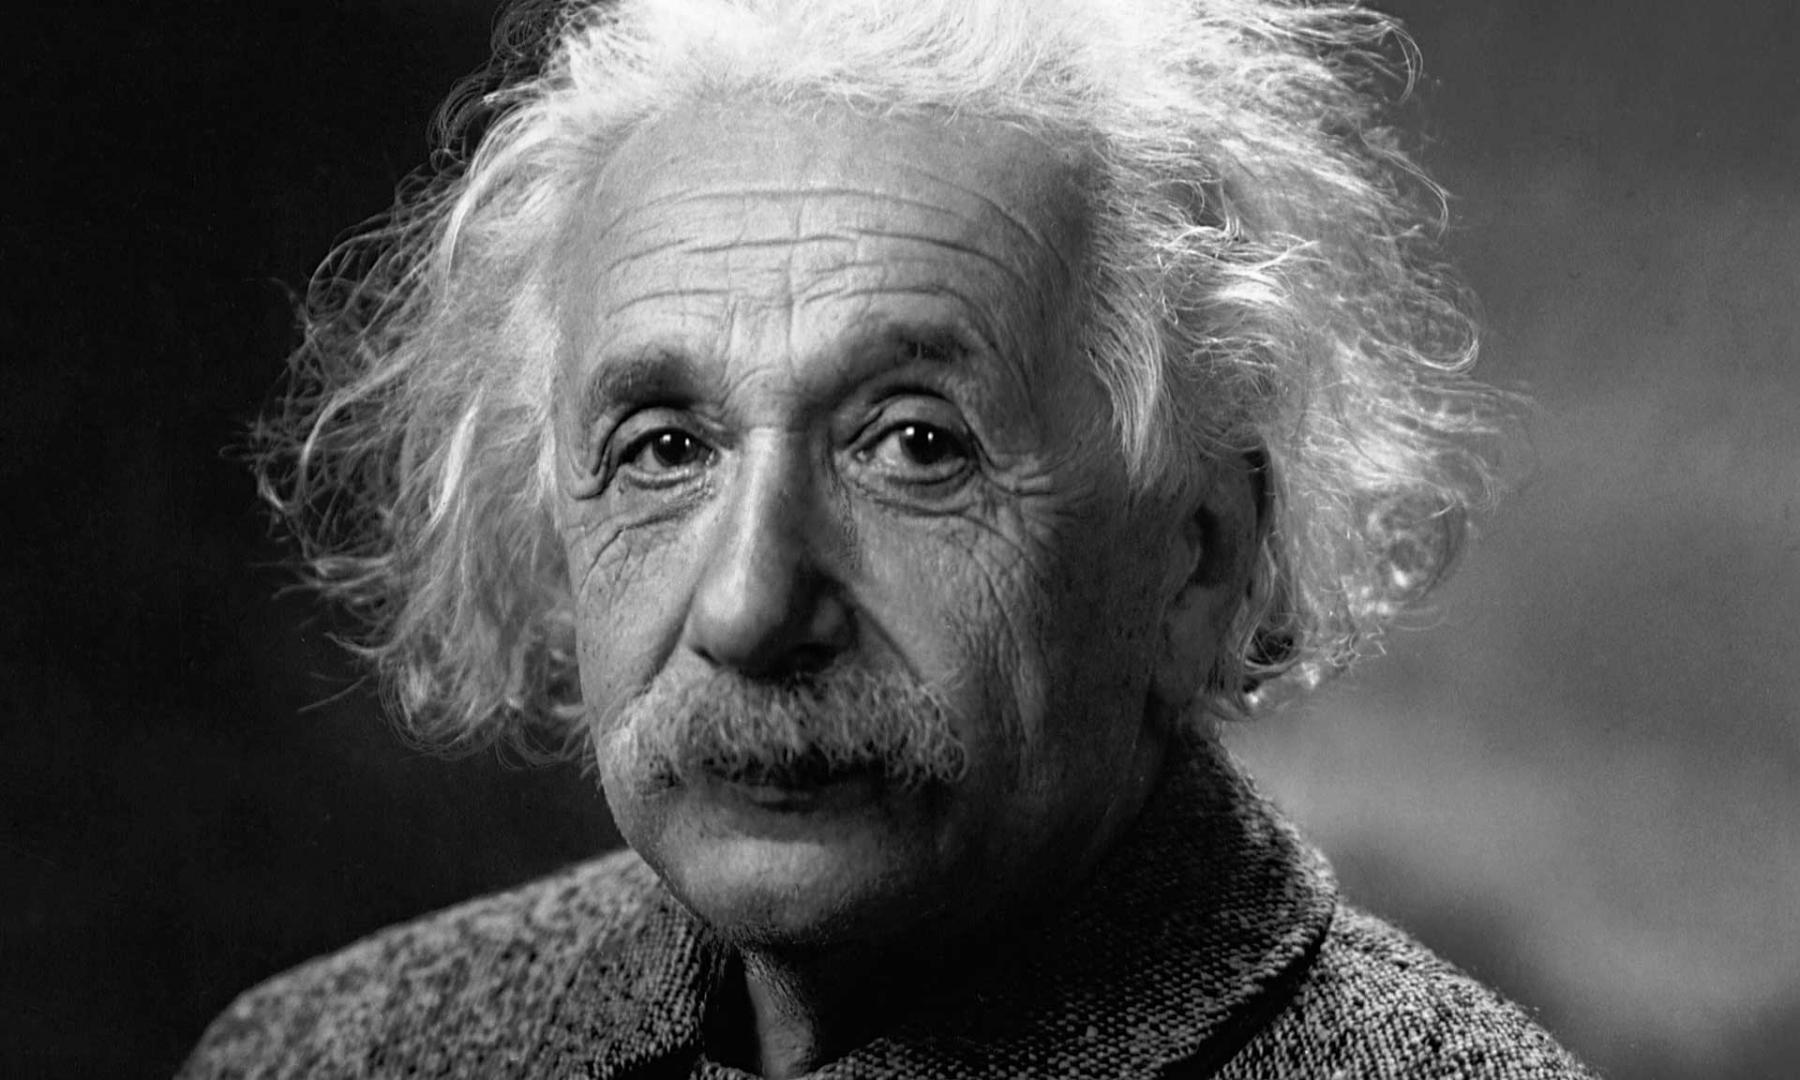 Письмо с уравнением Эйнштейна продали за 1,2 миллиона долларов